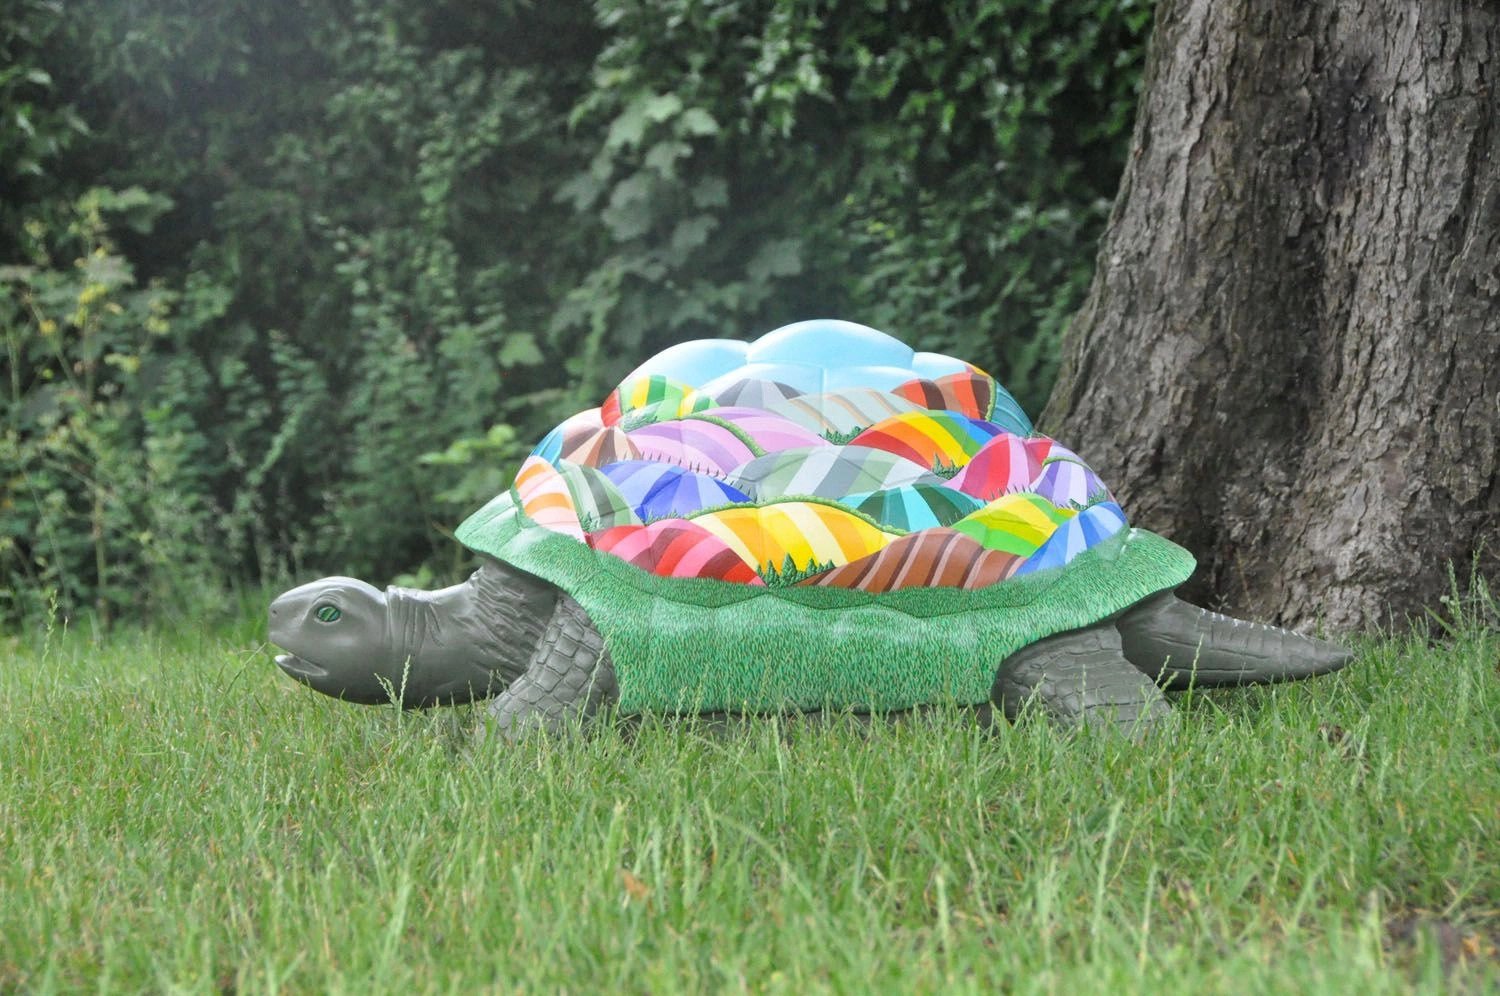 Giant Tortoise Model